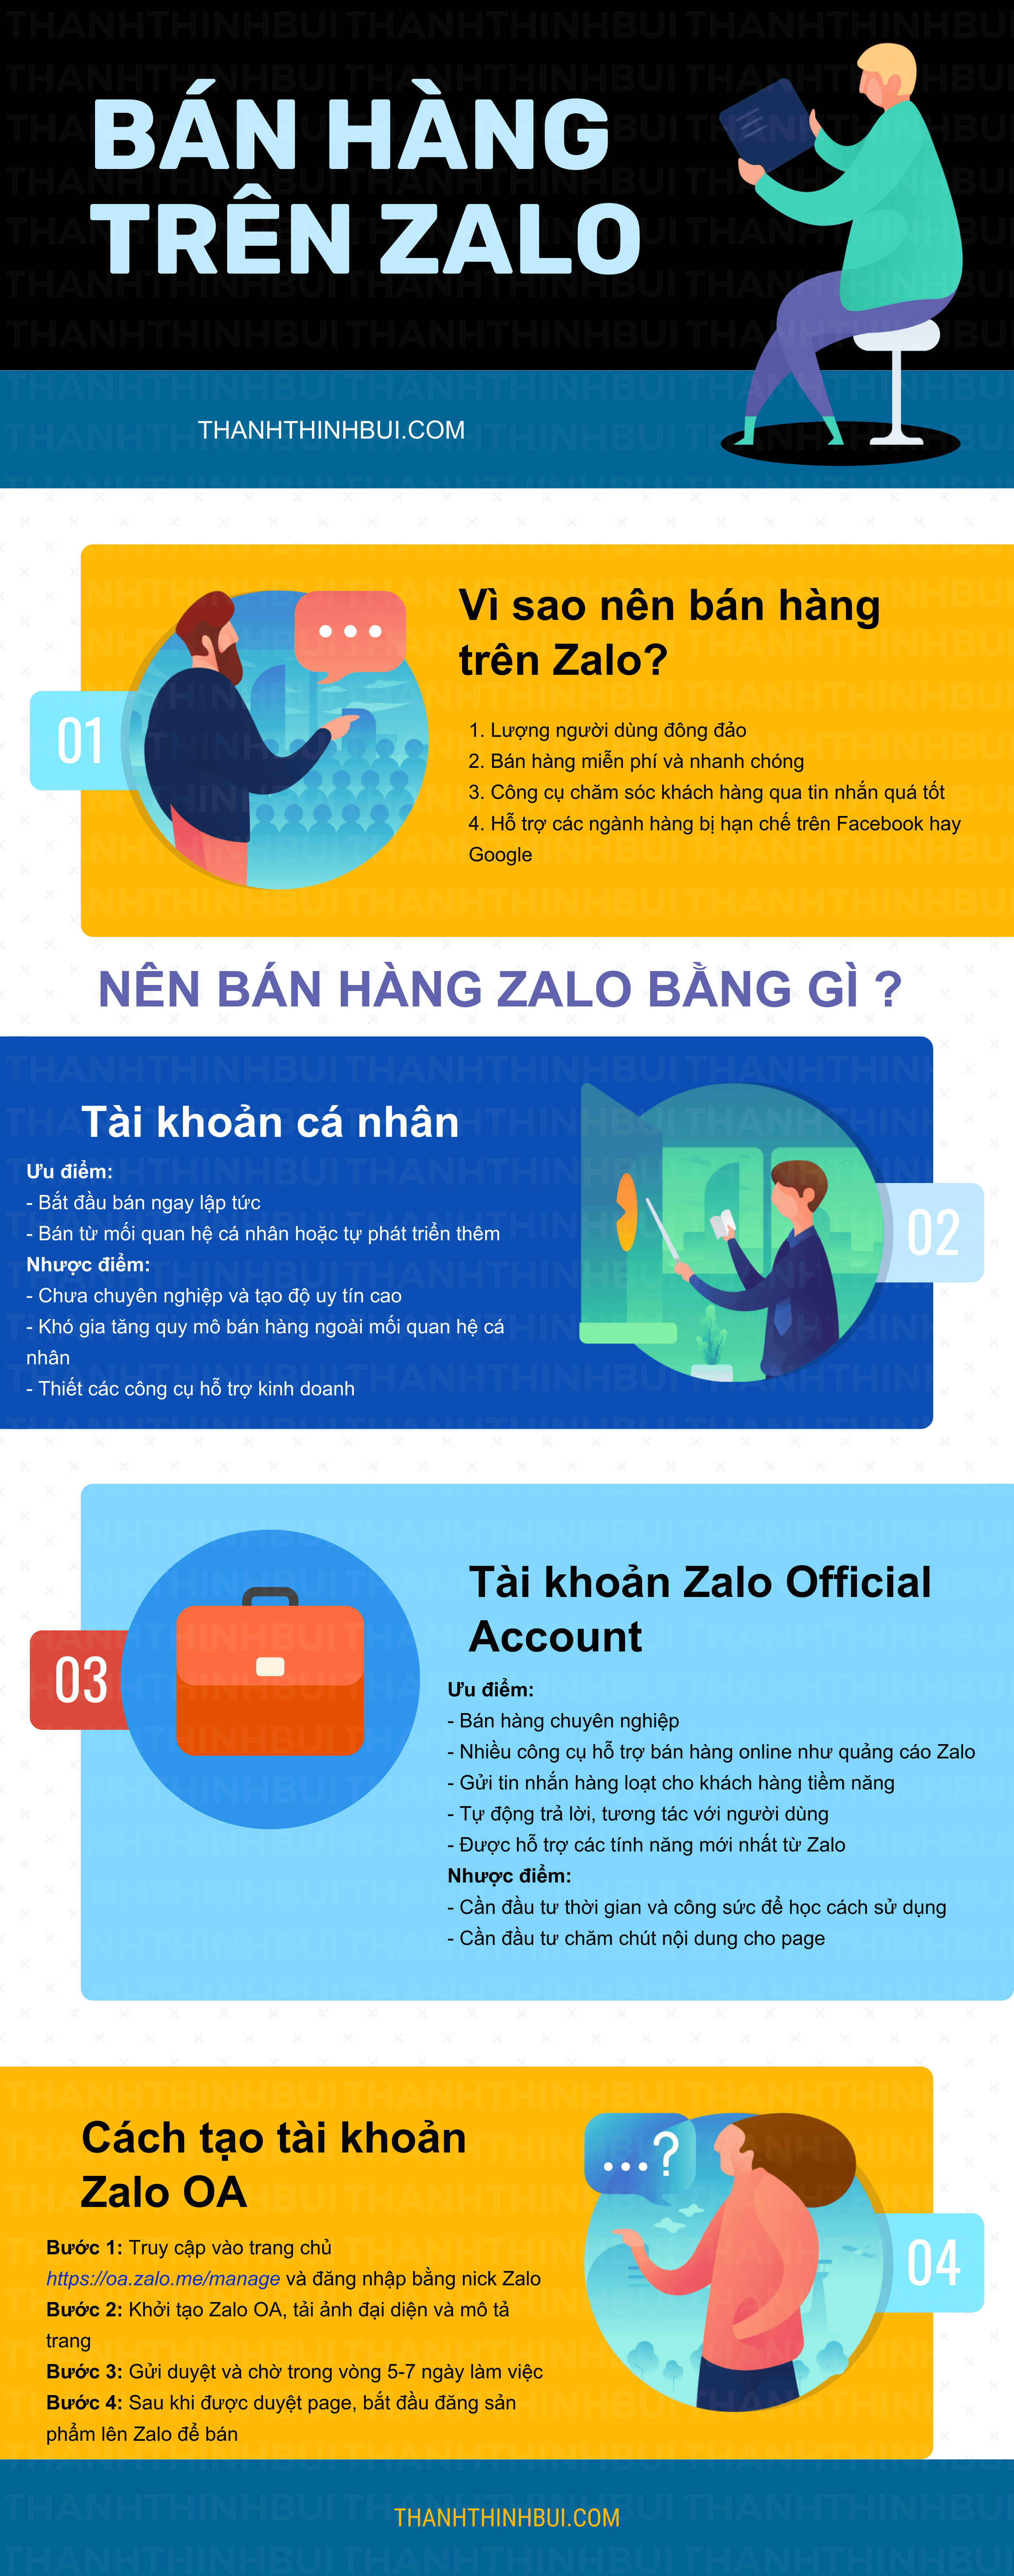 ban-hang-zalo-infographic